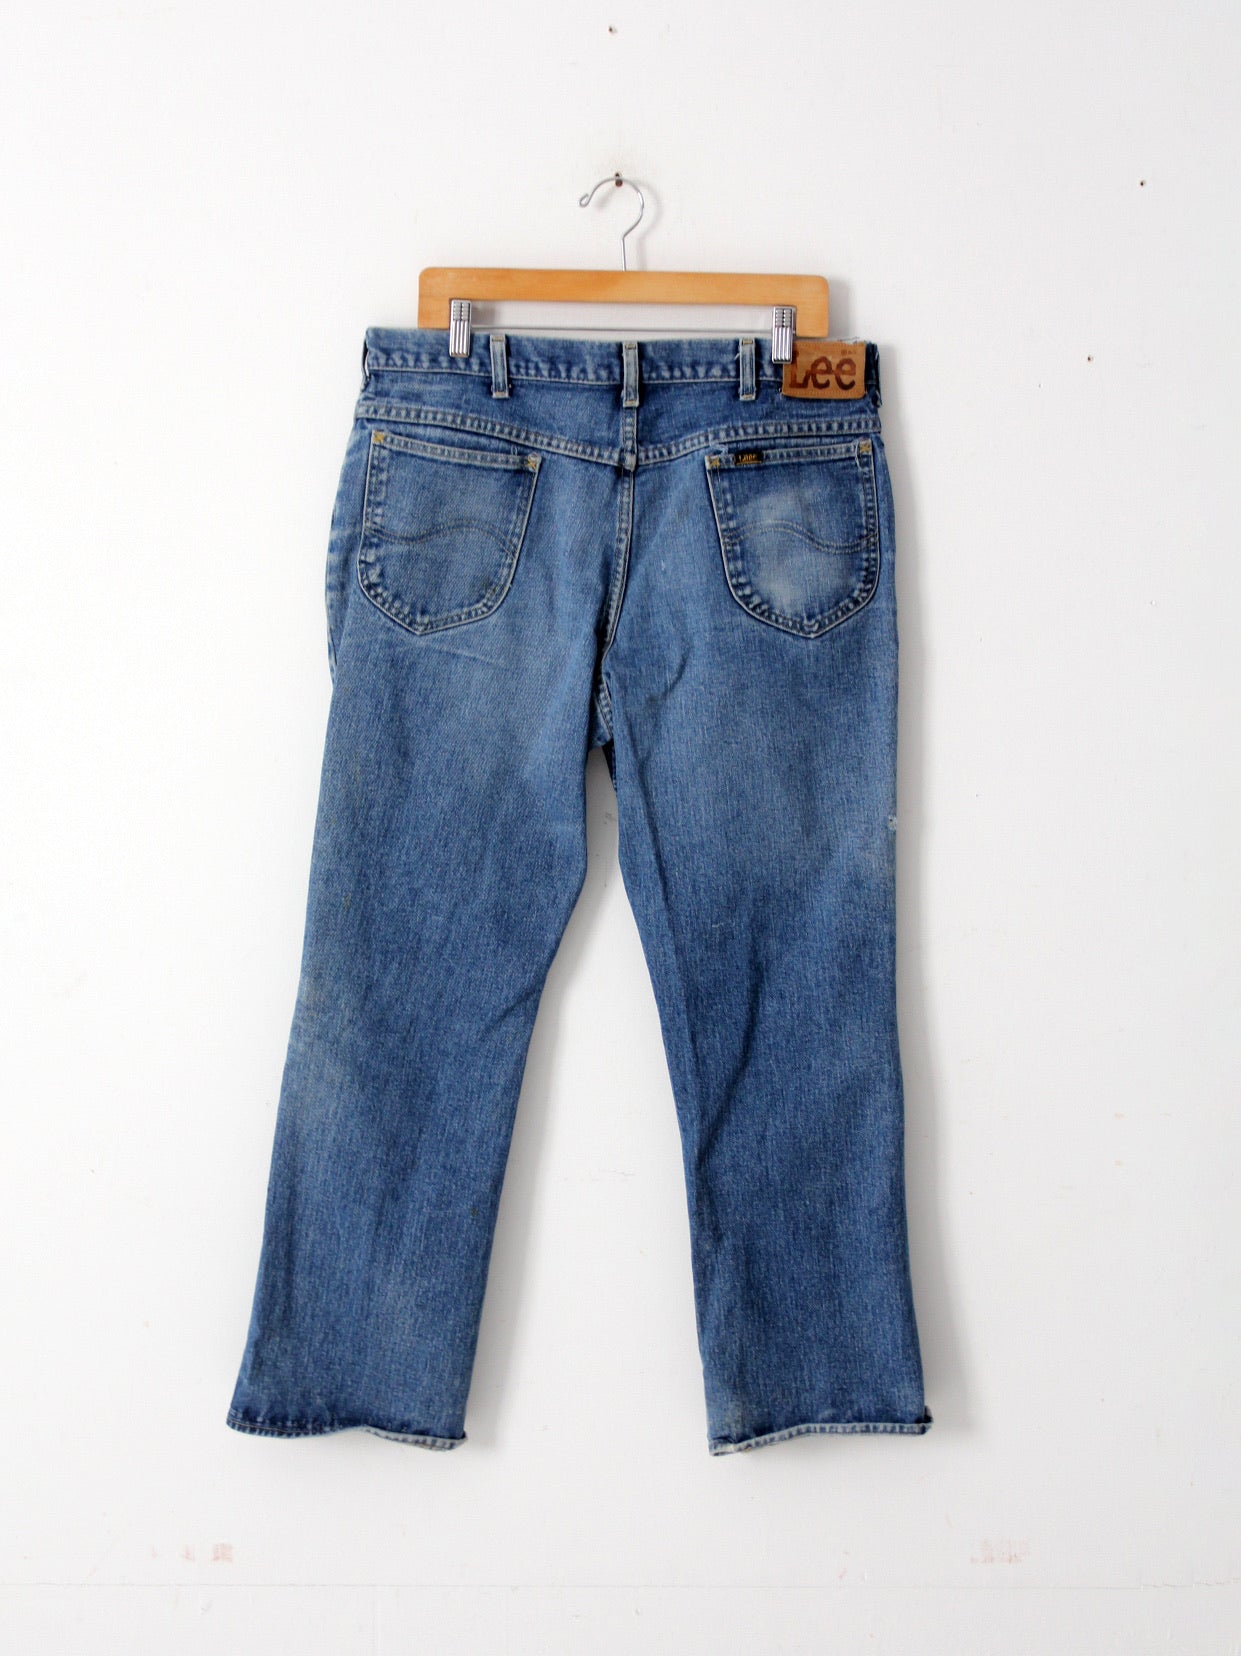 vintage Lee Riders denim jeans 37 x 29